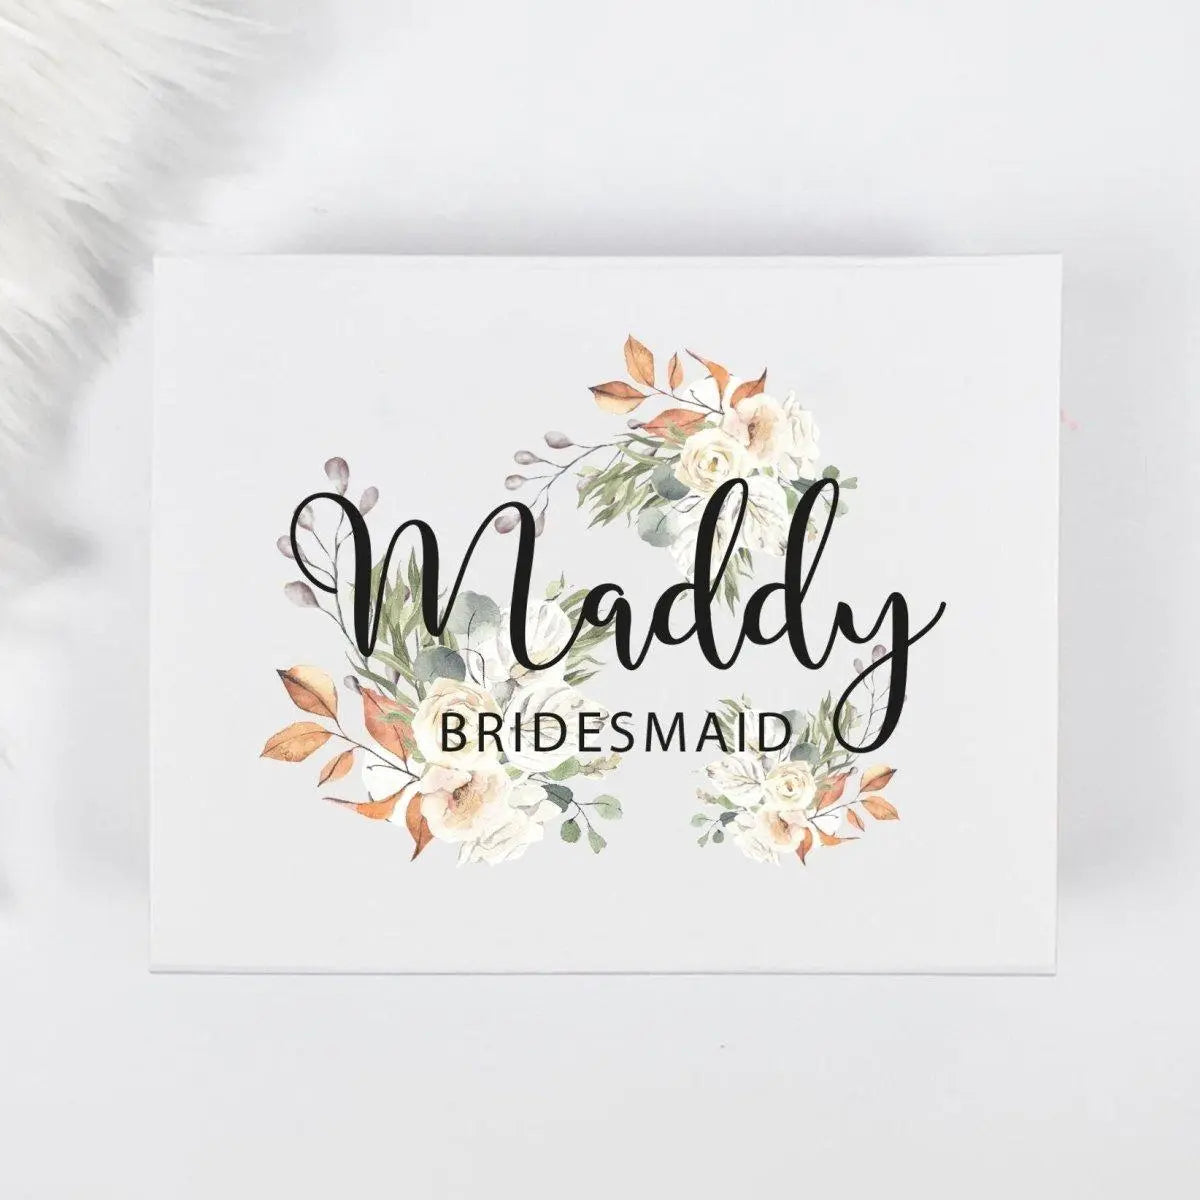 Personalised Bridesmaid Gift Box, Bridesmaid Proposal Gift Box, Bridesmaid Wedding Box, Bride Box, Bride to Be Box, Wedding Morning Box, Hen - Amy Lucy